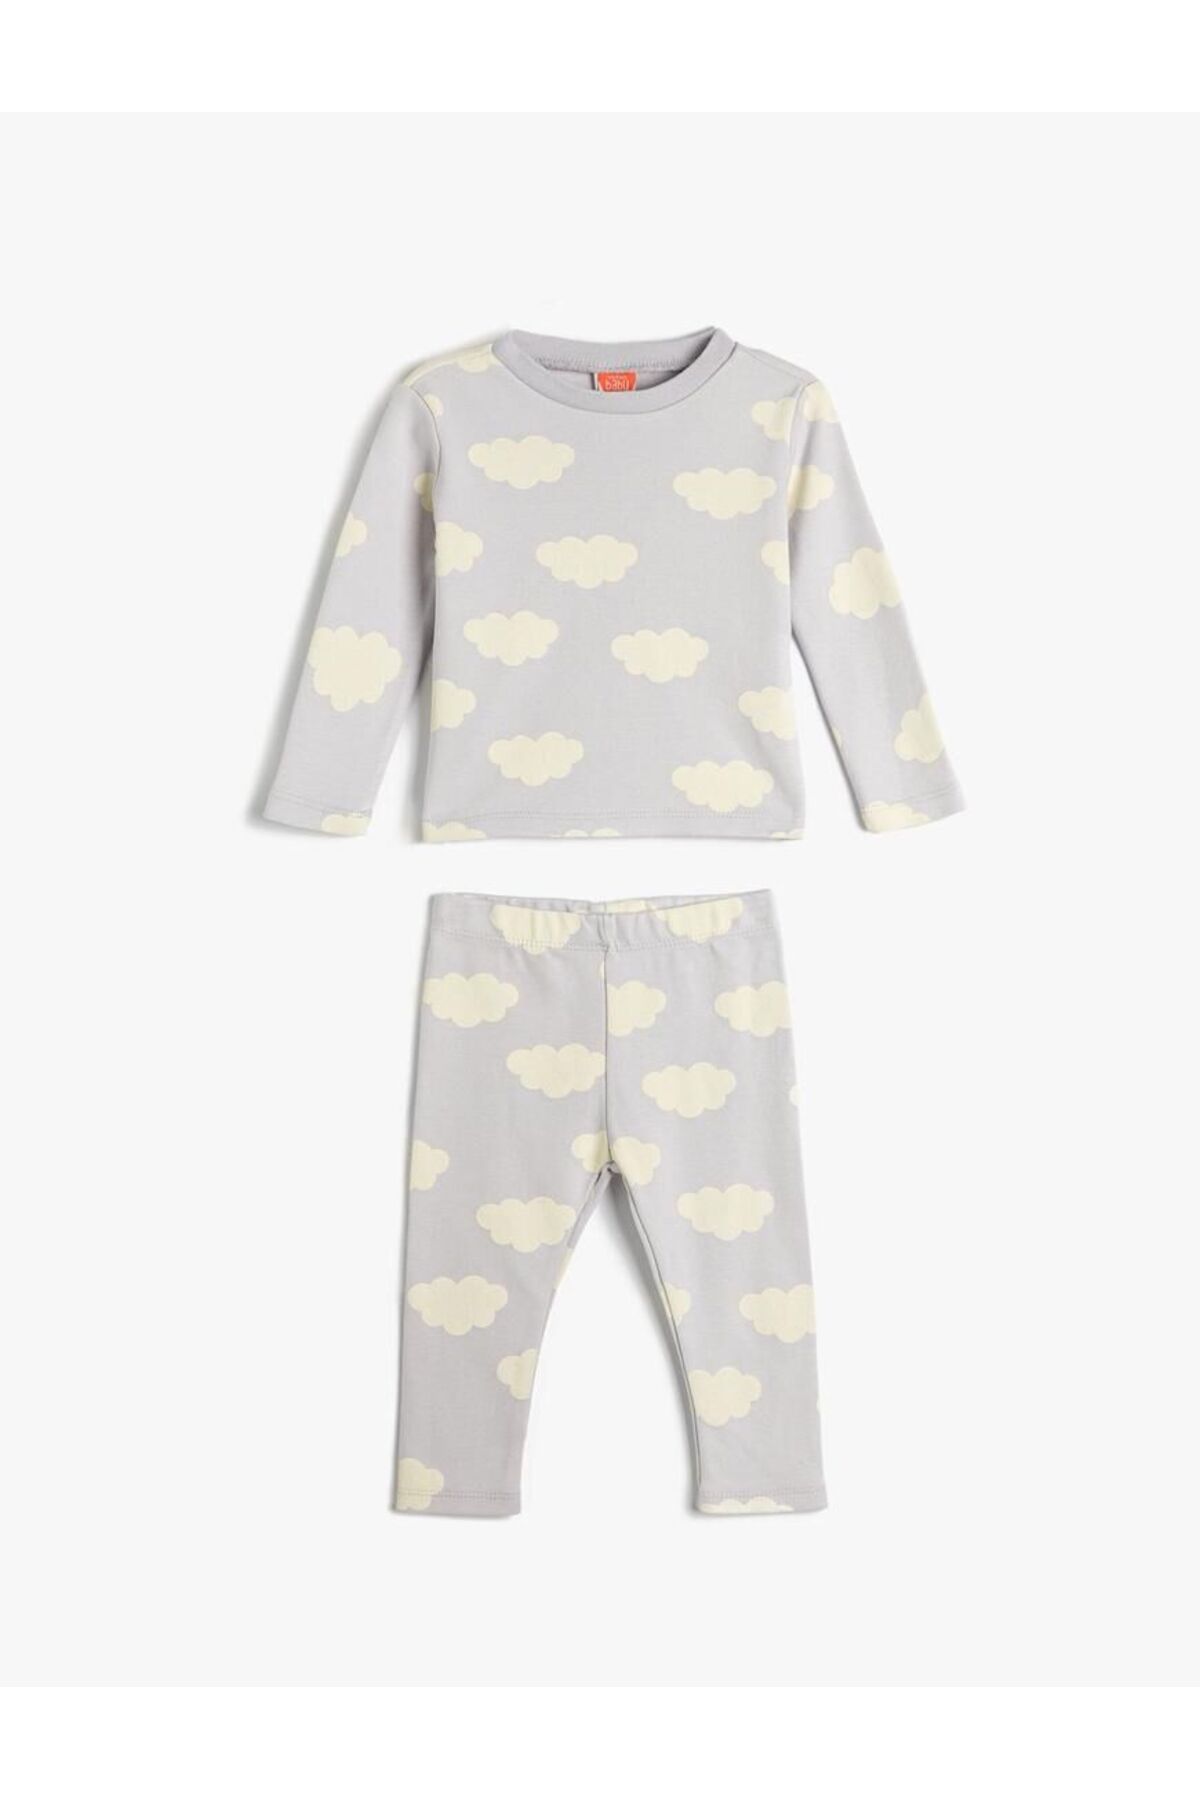 Koton Kız Bebek Pijama Takımı Koalalı Uzun Kollu Tişört ve Beli Lastikli Pijama Altı 2 Parça